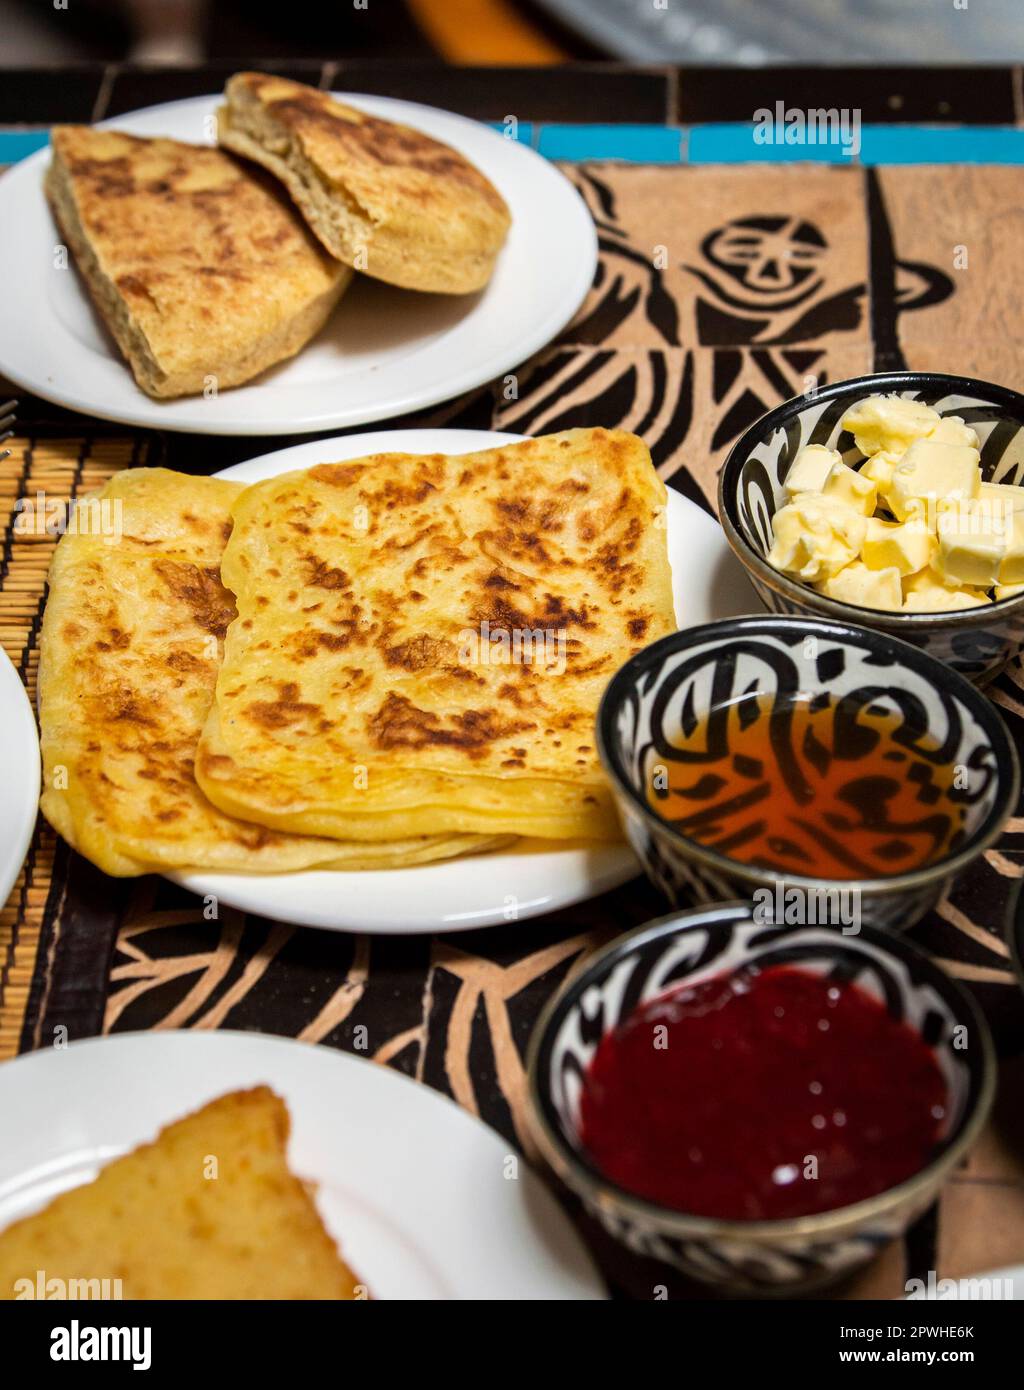 Petit-déjeuner marocain traditionnel avec crêpes, pain, beurre, miel et confiture placés sur la table à manger Banque D'Images